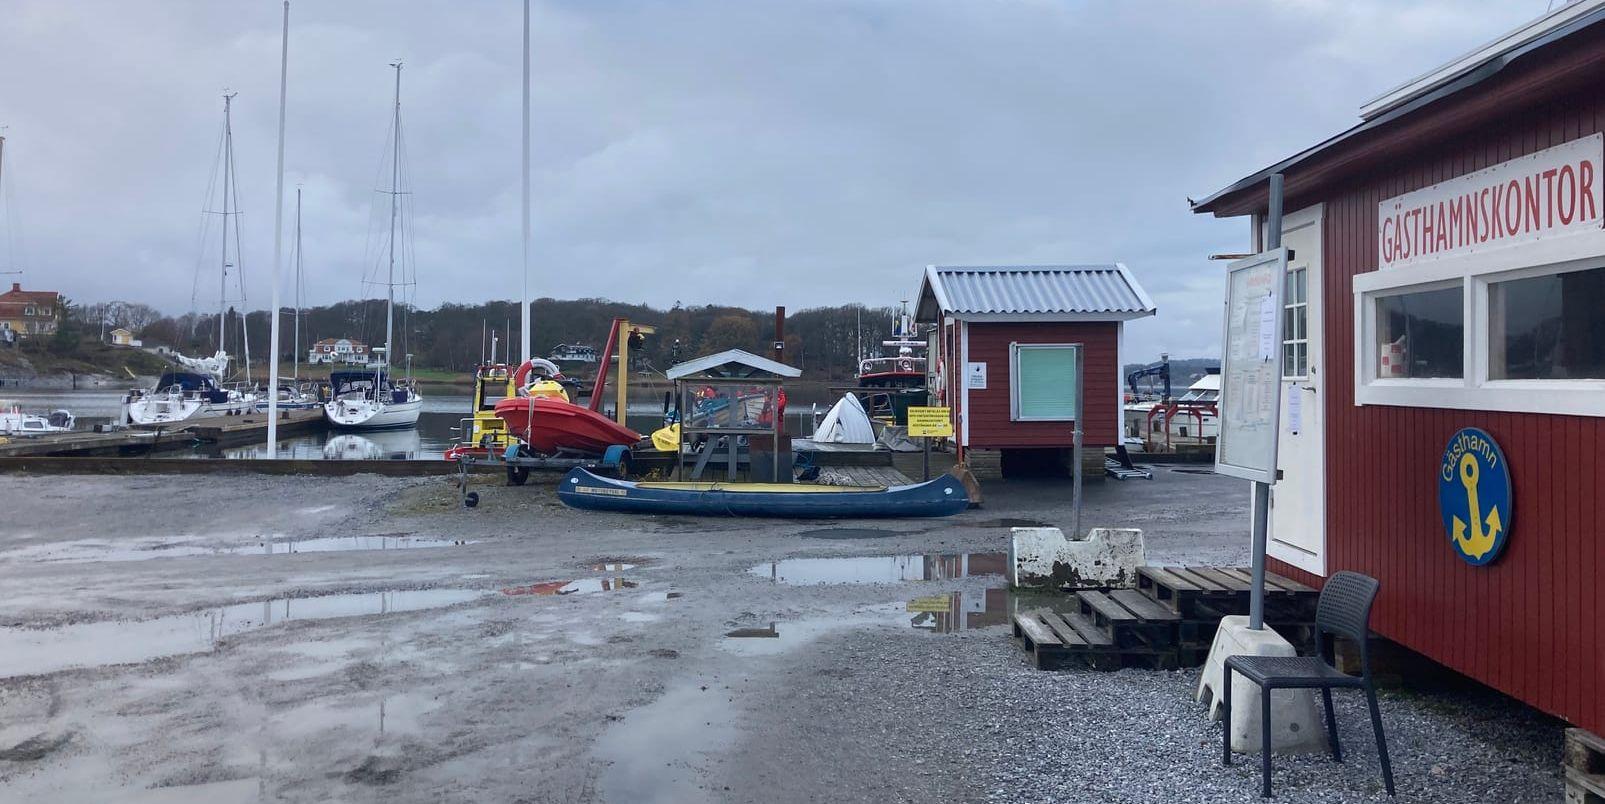 En utländsk medborgare hittades på söndagen död på en båt i Stenungsund. Enligt polisen ska mannen ha varit död i flera dagar. 